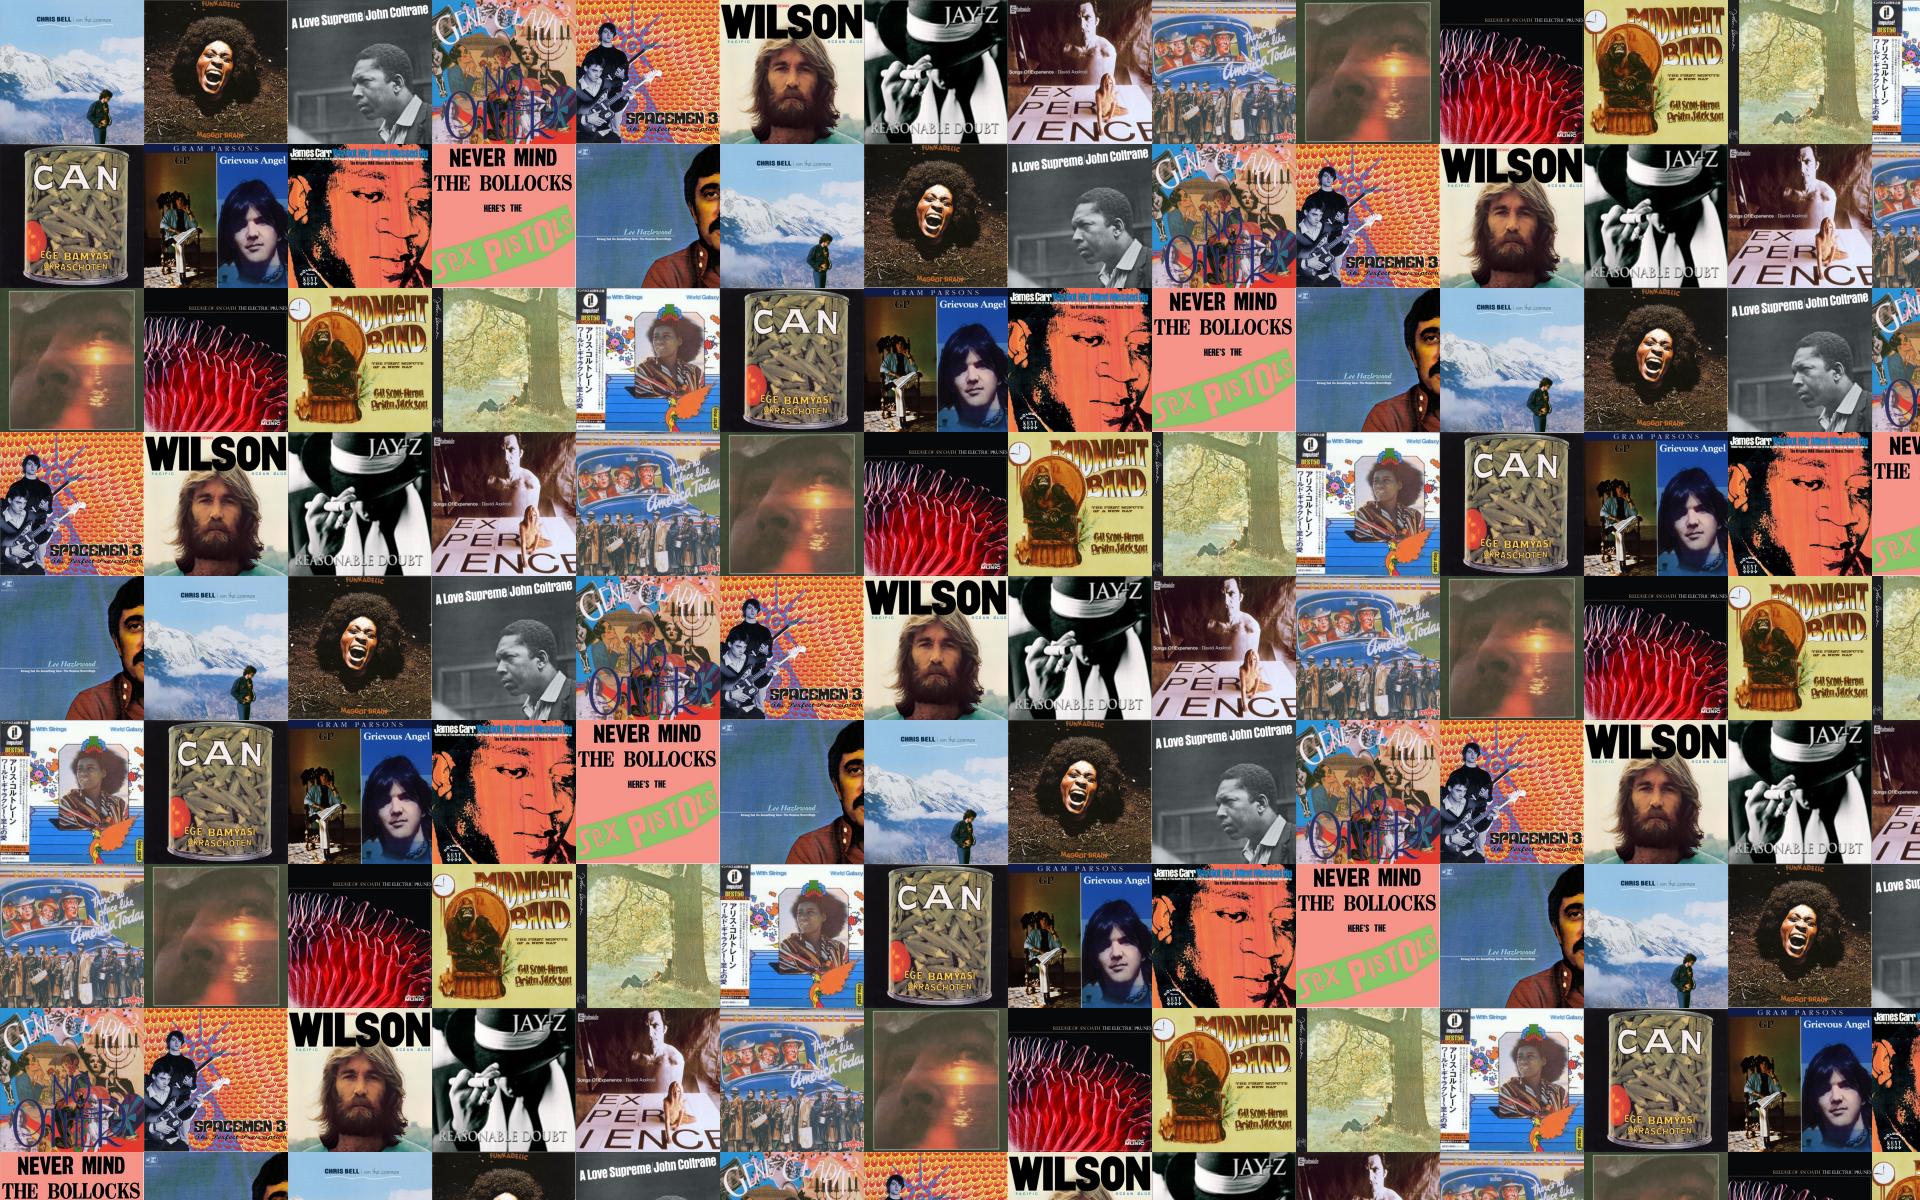 Funkadelic Wallpaper. Funkadelic Wallpaper, Funkadelic Background and Funkadelic Christmas Background